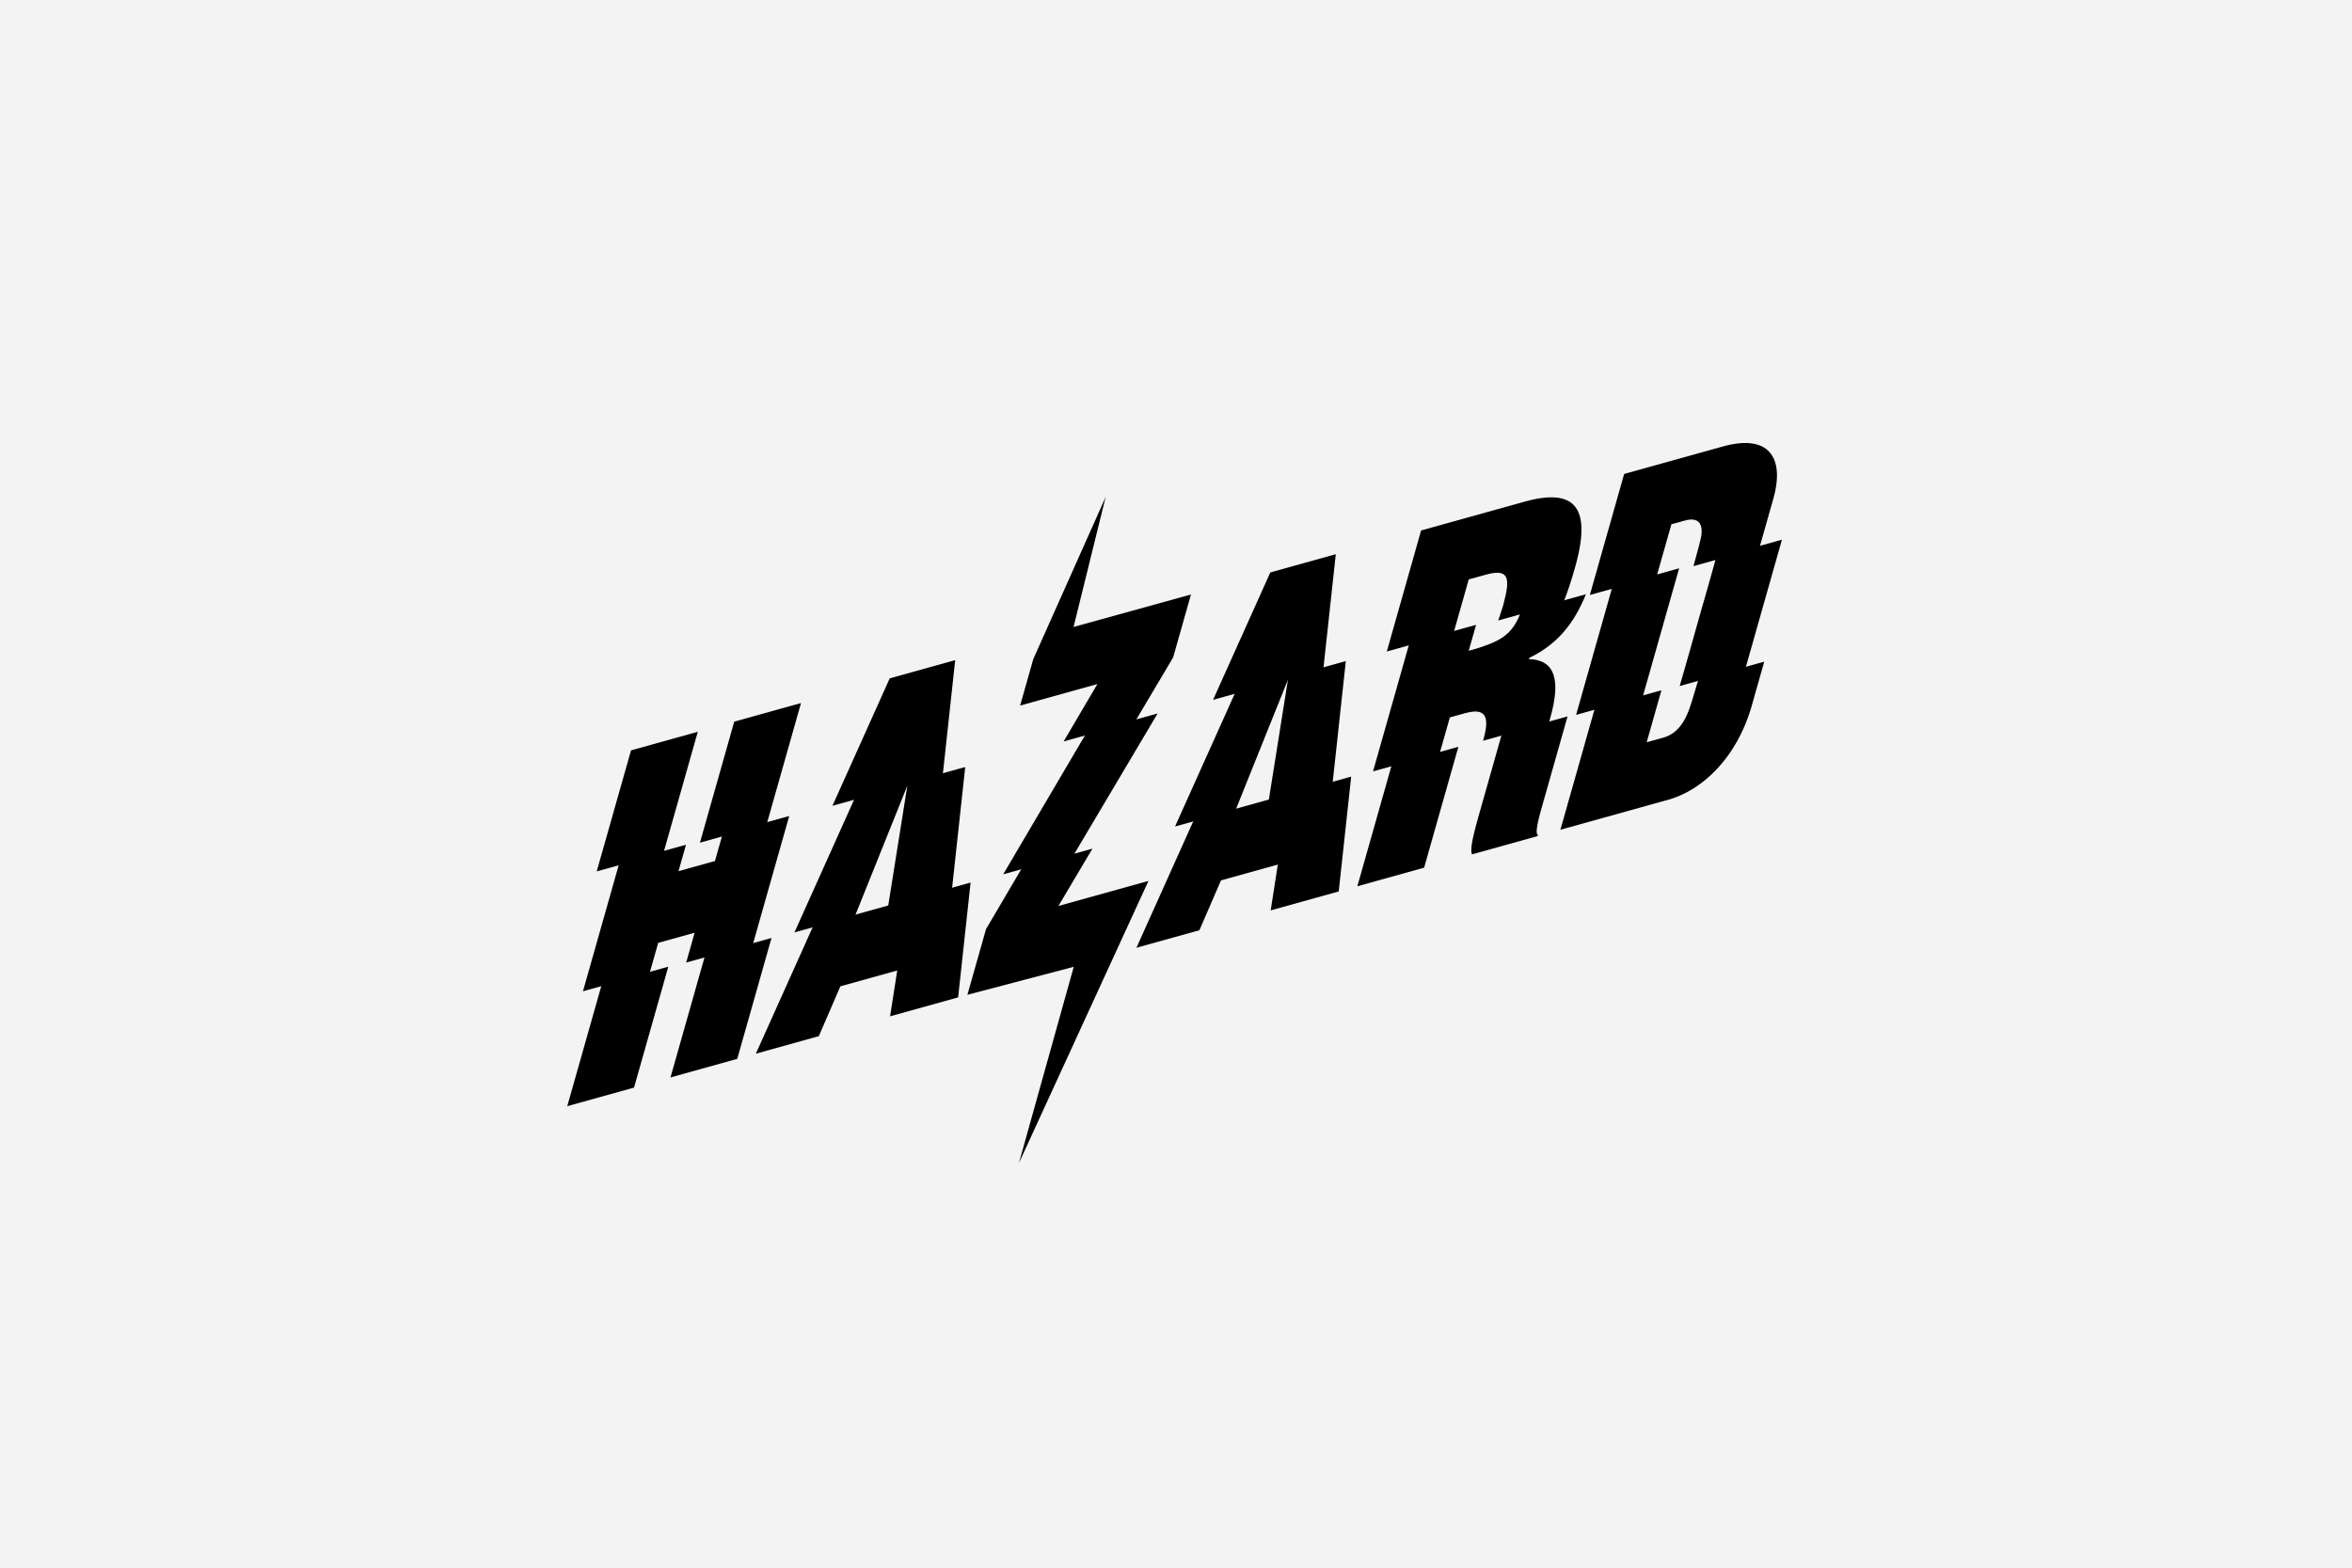 Nike_Hazard_logo.jpg